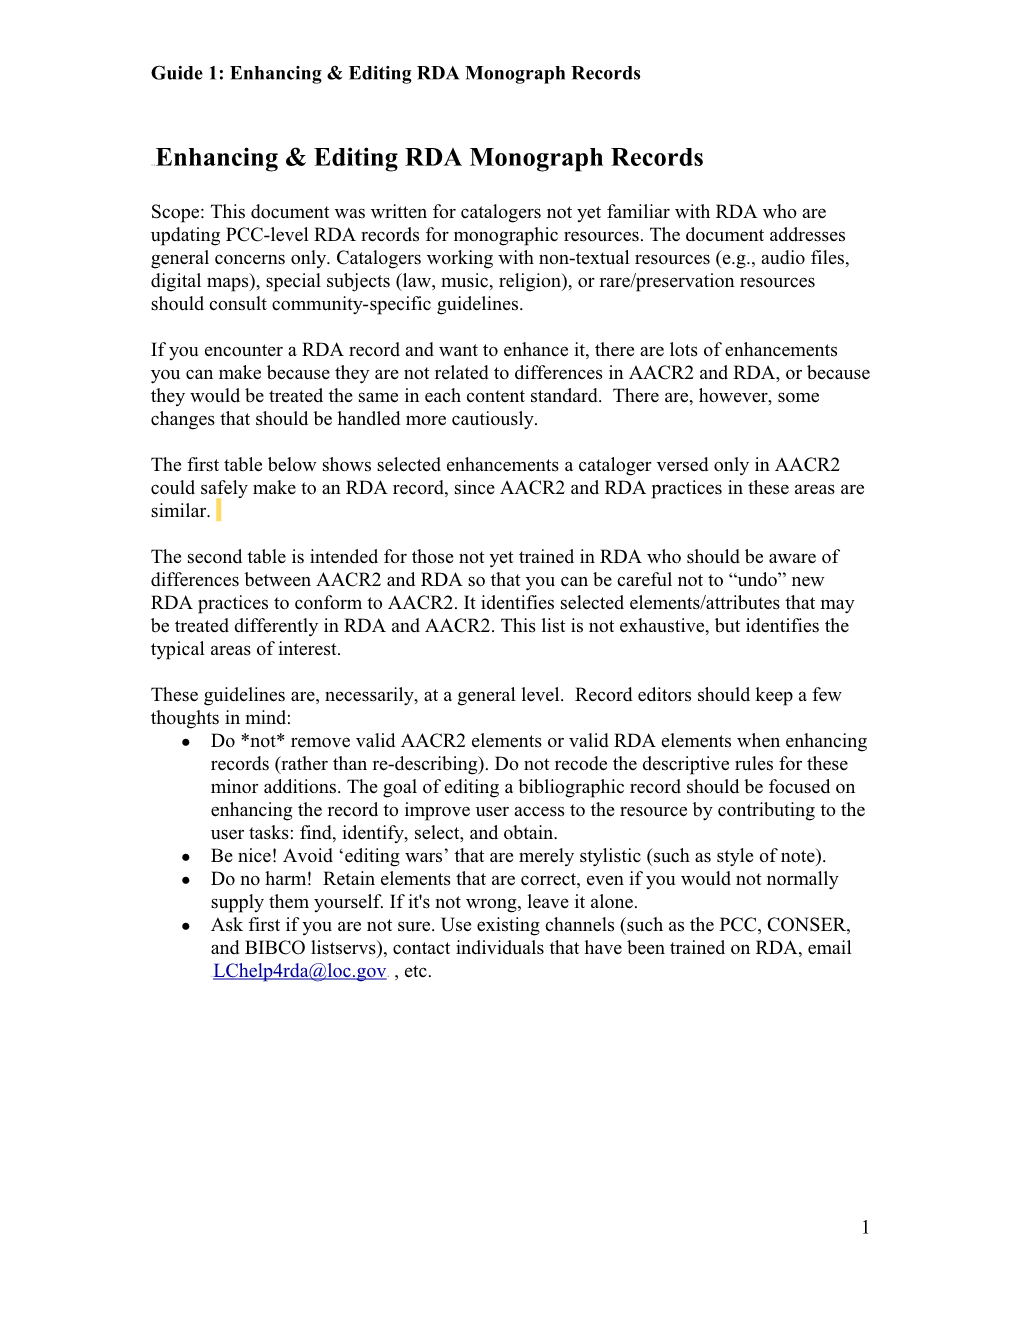 Enhancing & Editing RDA Monograph Records